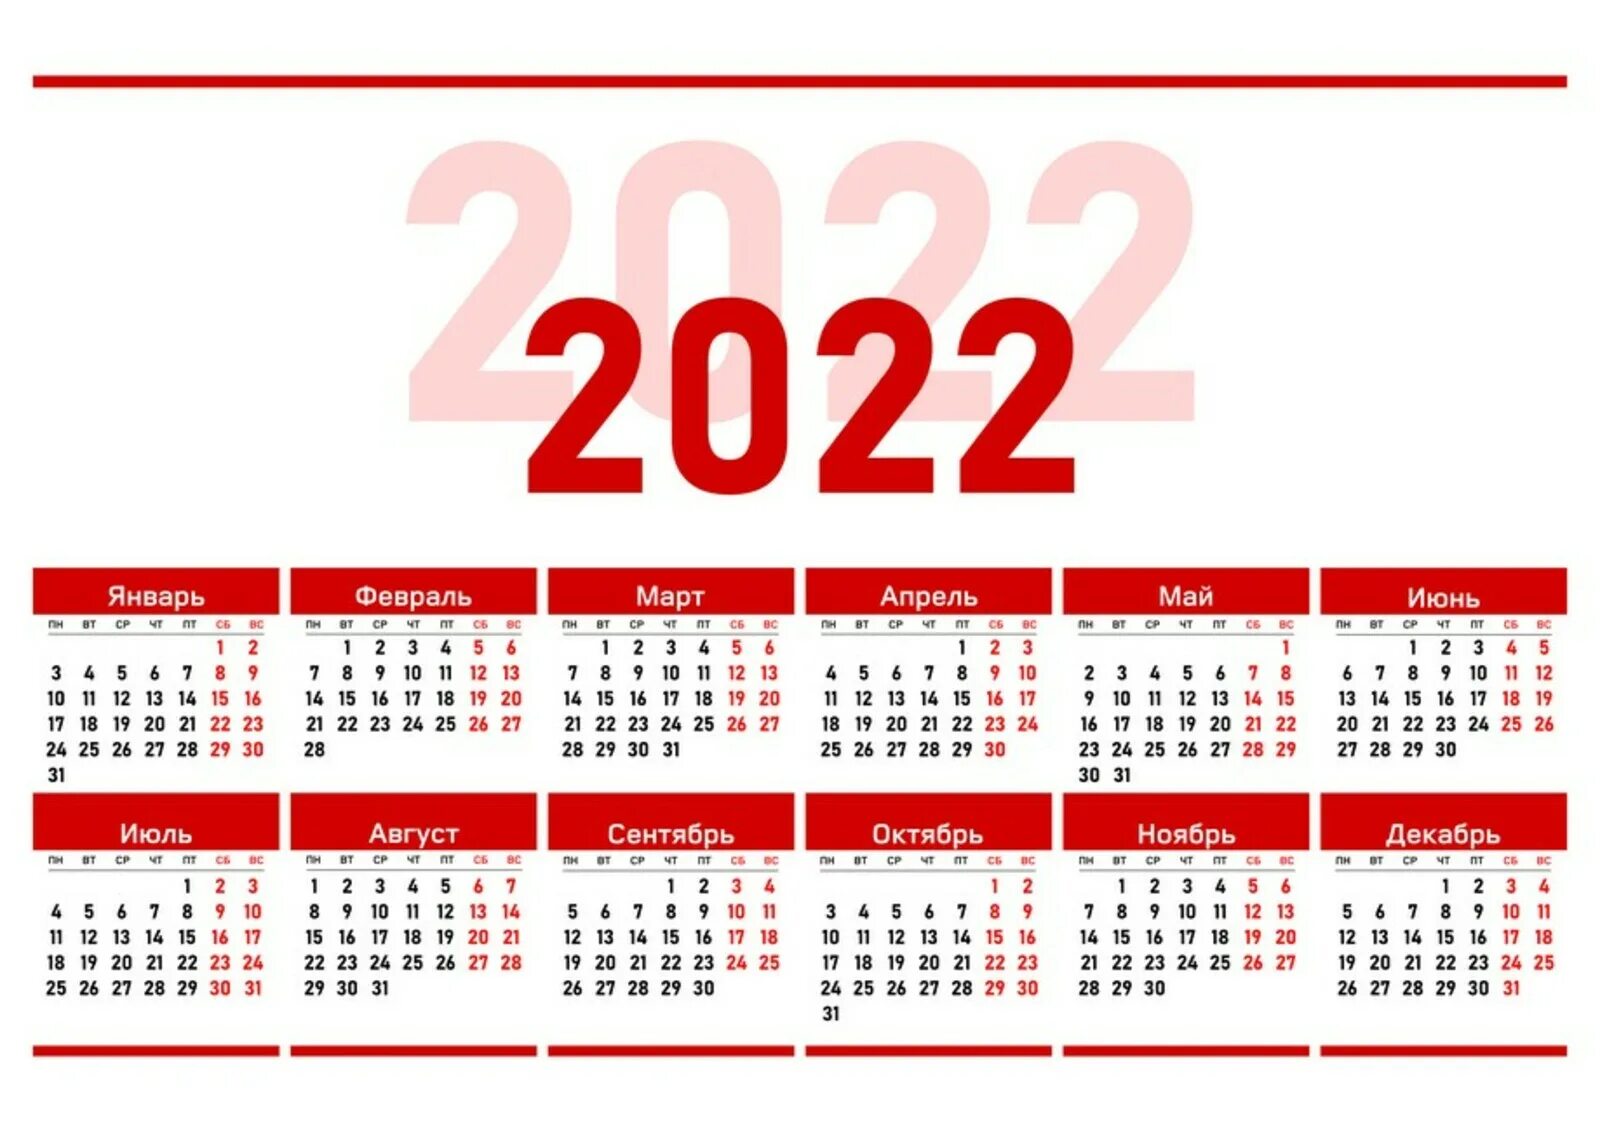 Сколько прошло месяцев с 2022. Календарь на 2022 год ЛНР. Официальные праздники 2022 года в России. Выходные дни в 2022 году в России. Рабочий календарь на 2022.